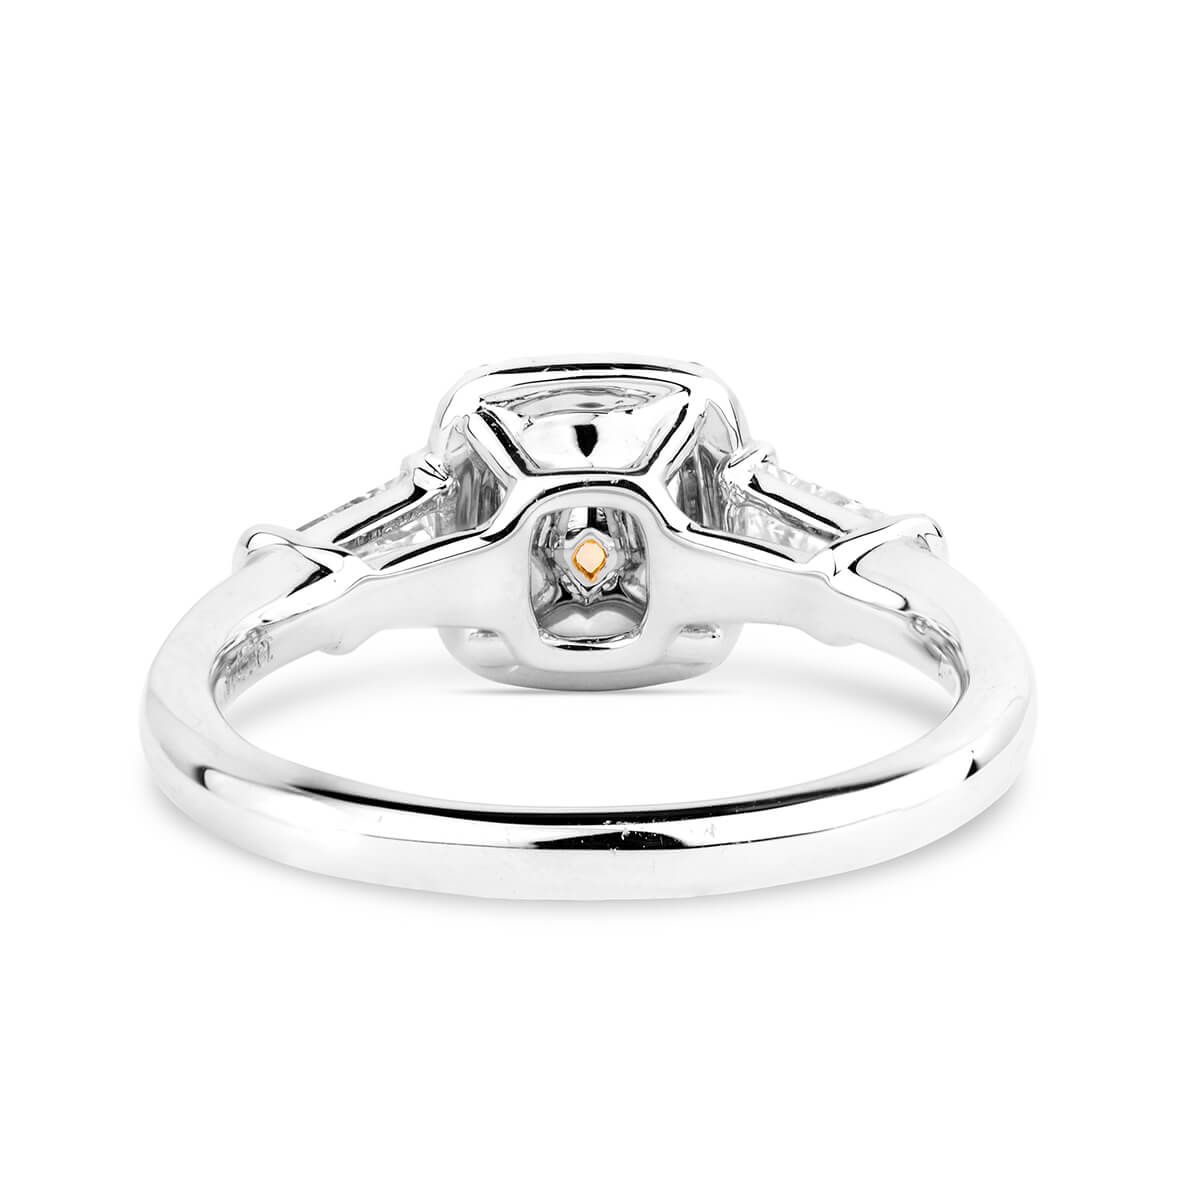 Fancy Intense Yellow Diamond Ring, 0.75 Ct. (1.20 Ct. TW), Cushion shape, GIA Certified, 6231388179